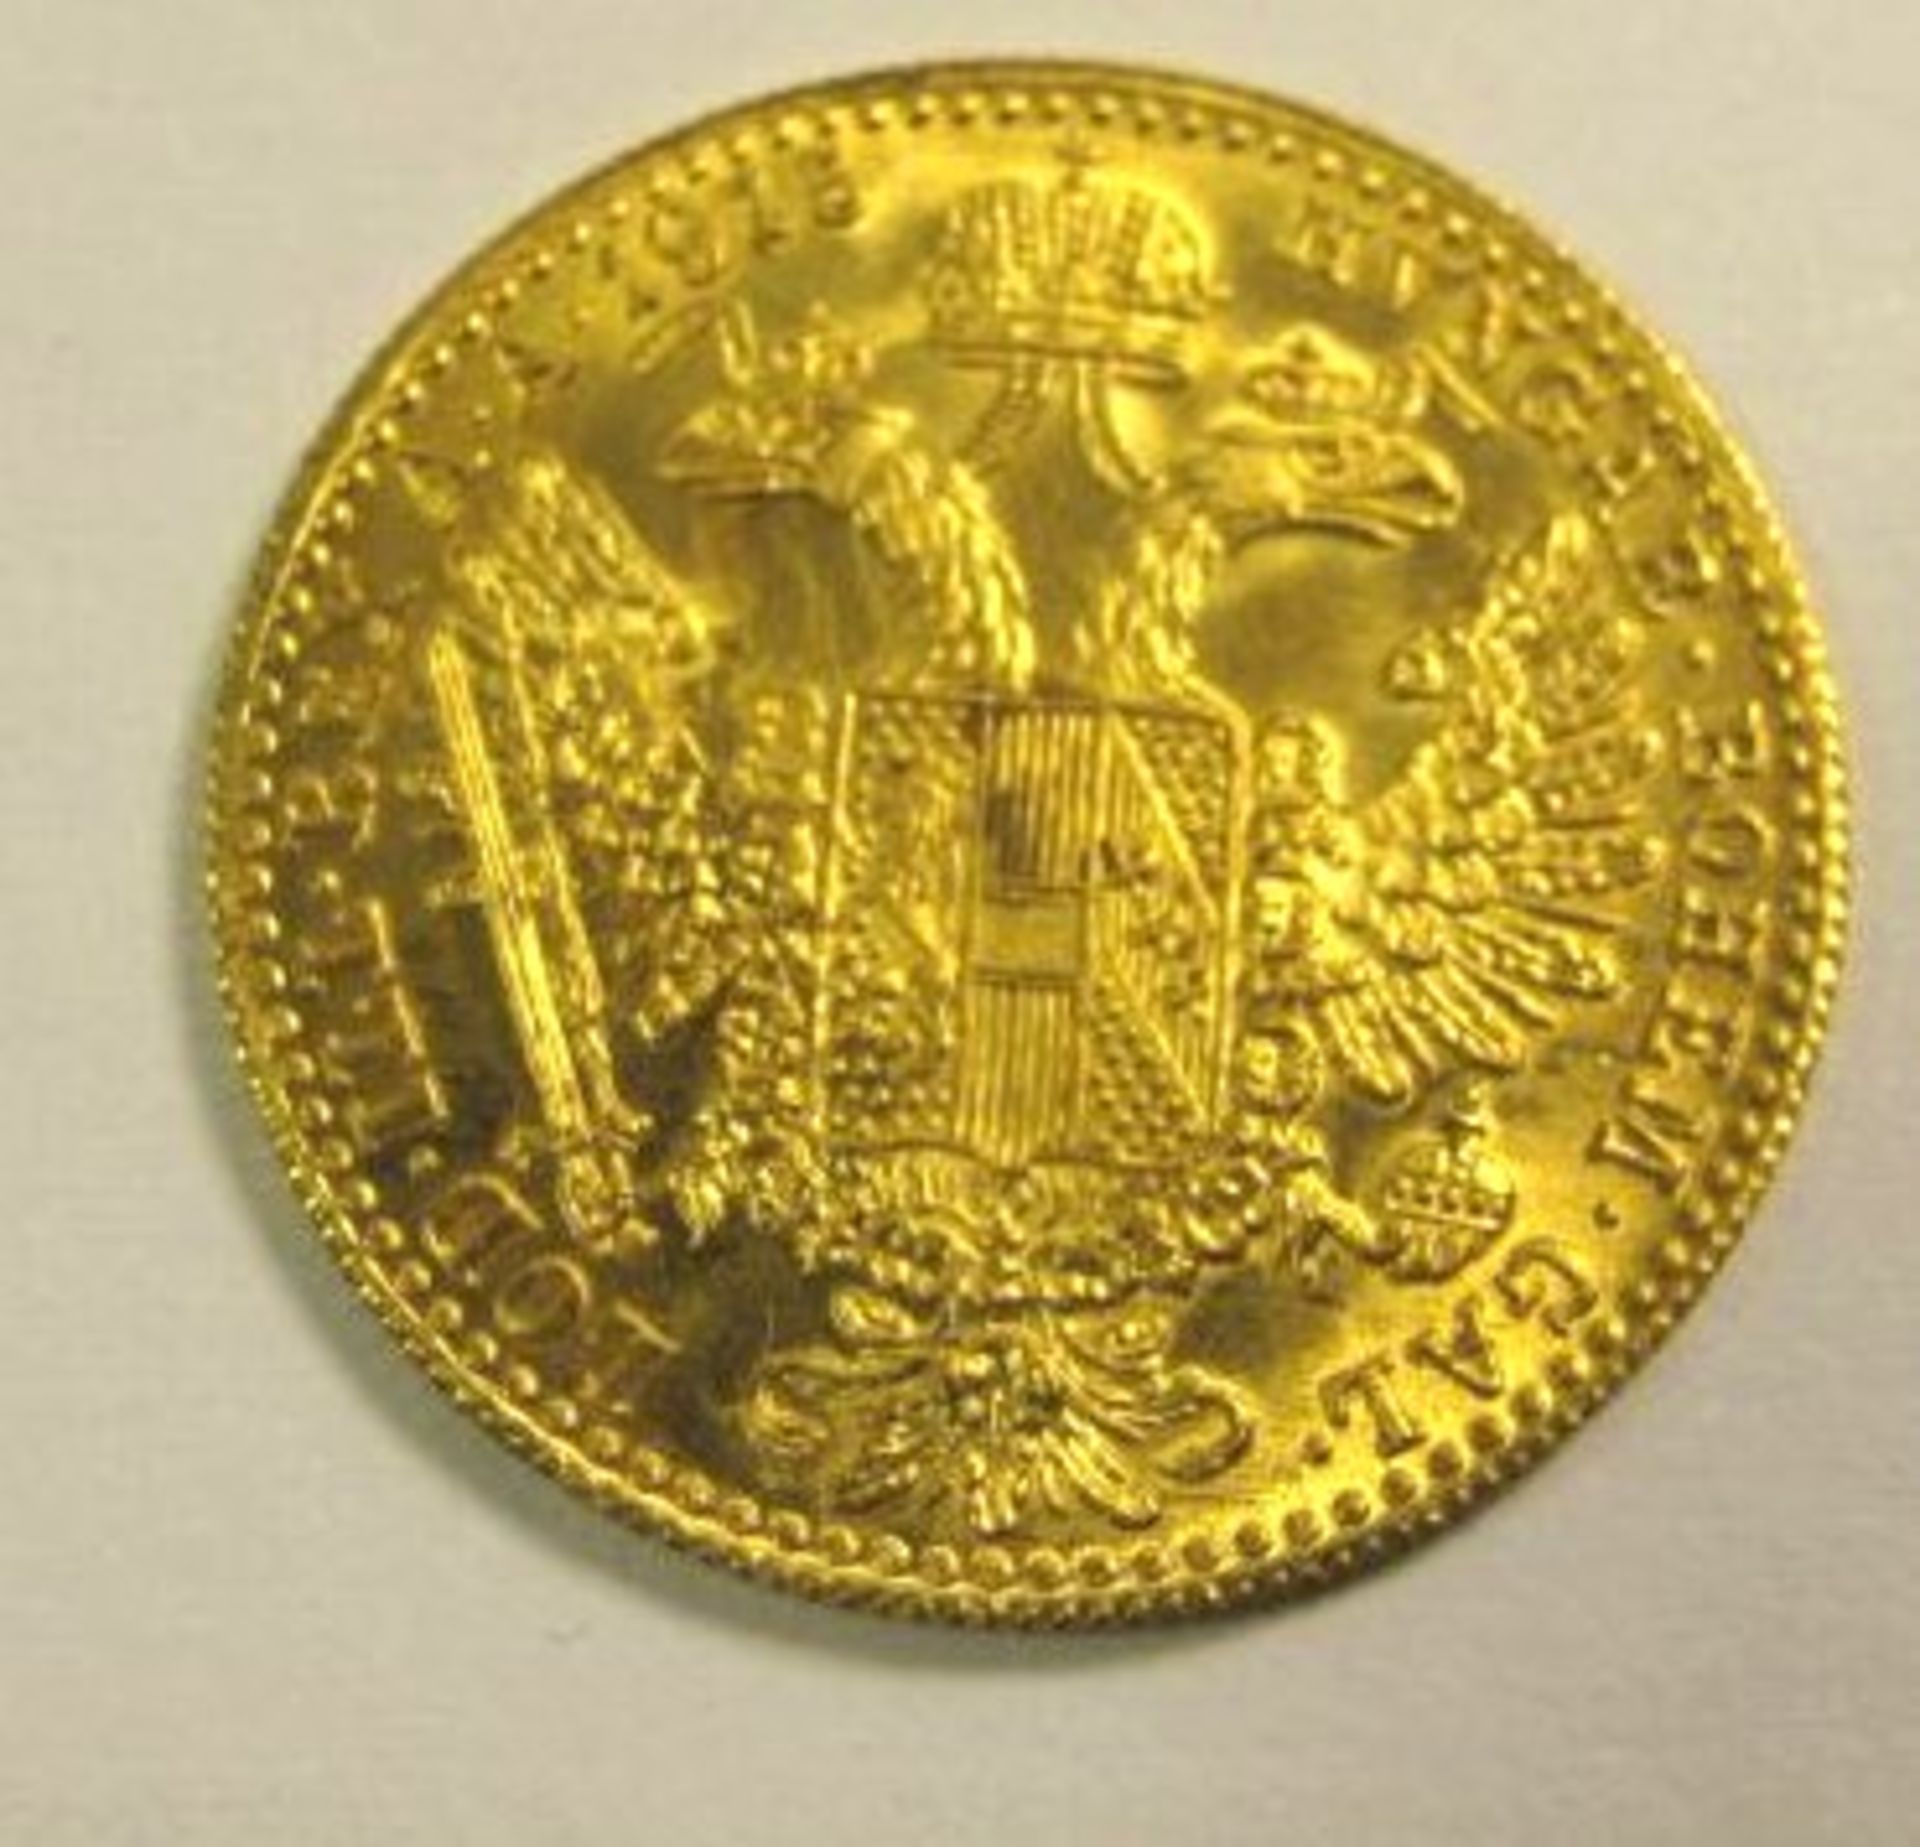 Münze, Österreich, 1 Dukat, 1915, Nachprägung, 986 GG. 3,4- - -22.61 % buyer's premium on the hammer - Bild 2 aus 2